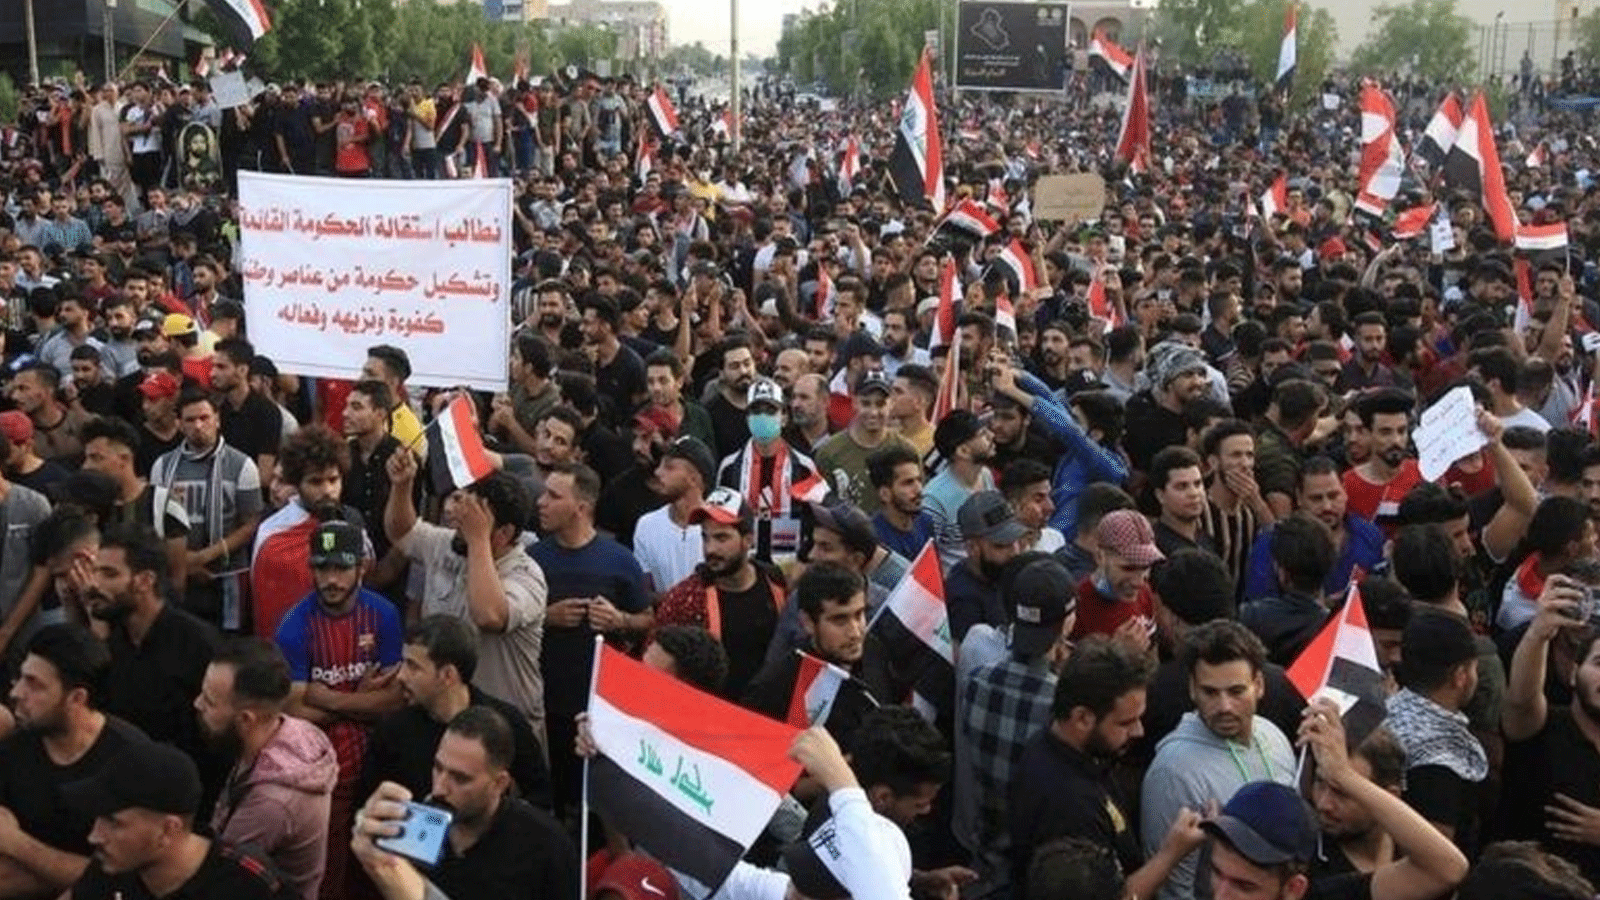 محتجون عراقيون خلال انتفاضتهم في 20 تشرين الأول\ اكتوبر 2019 ضد الفساد والمحاصصة والتي اسقطت حكومة عبد المهدي السابقة